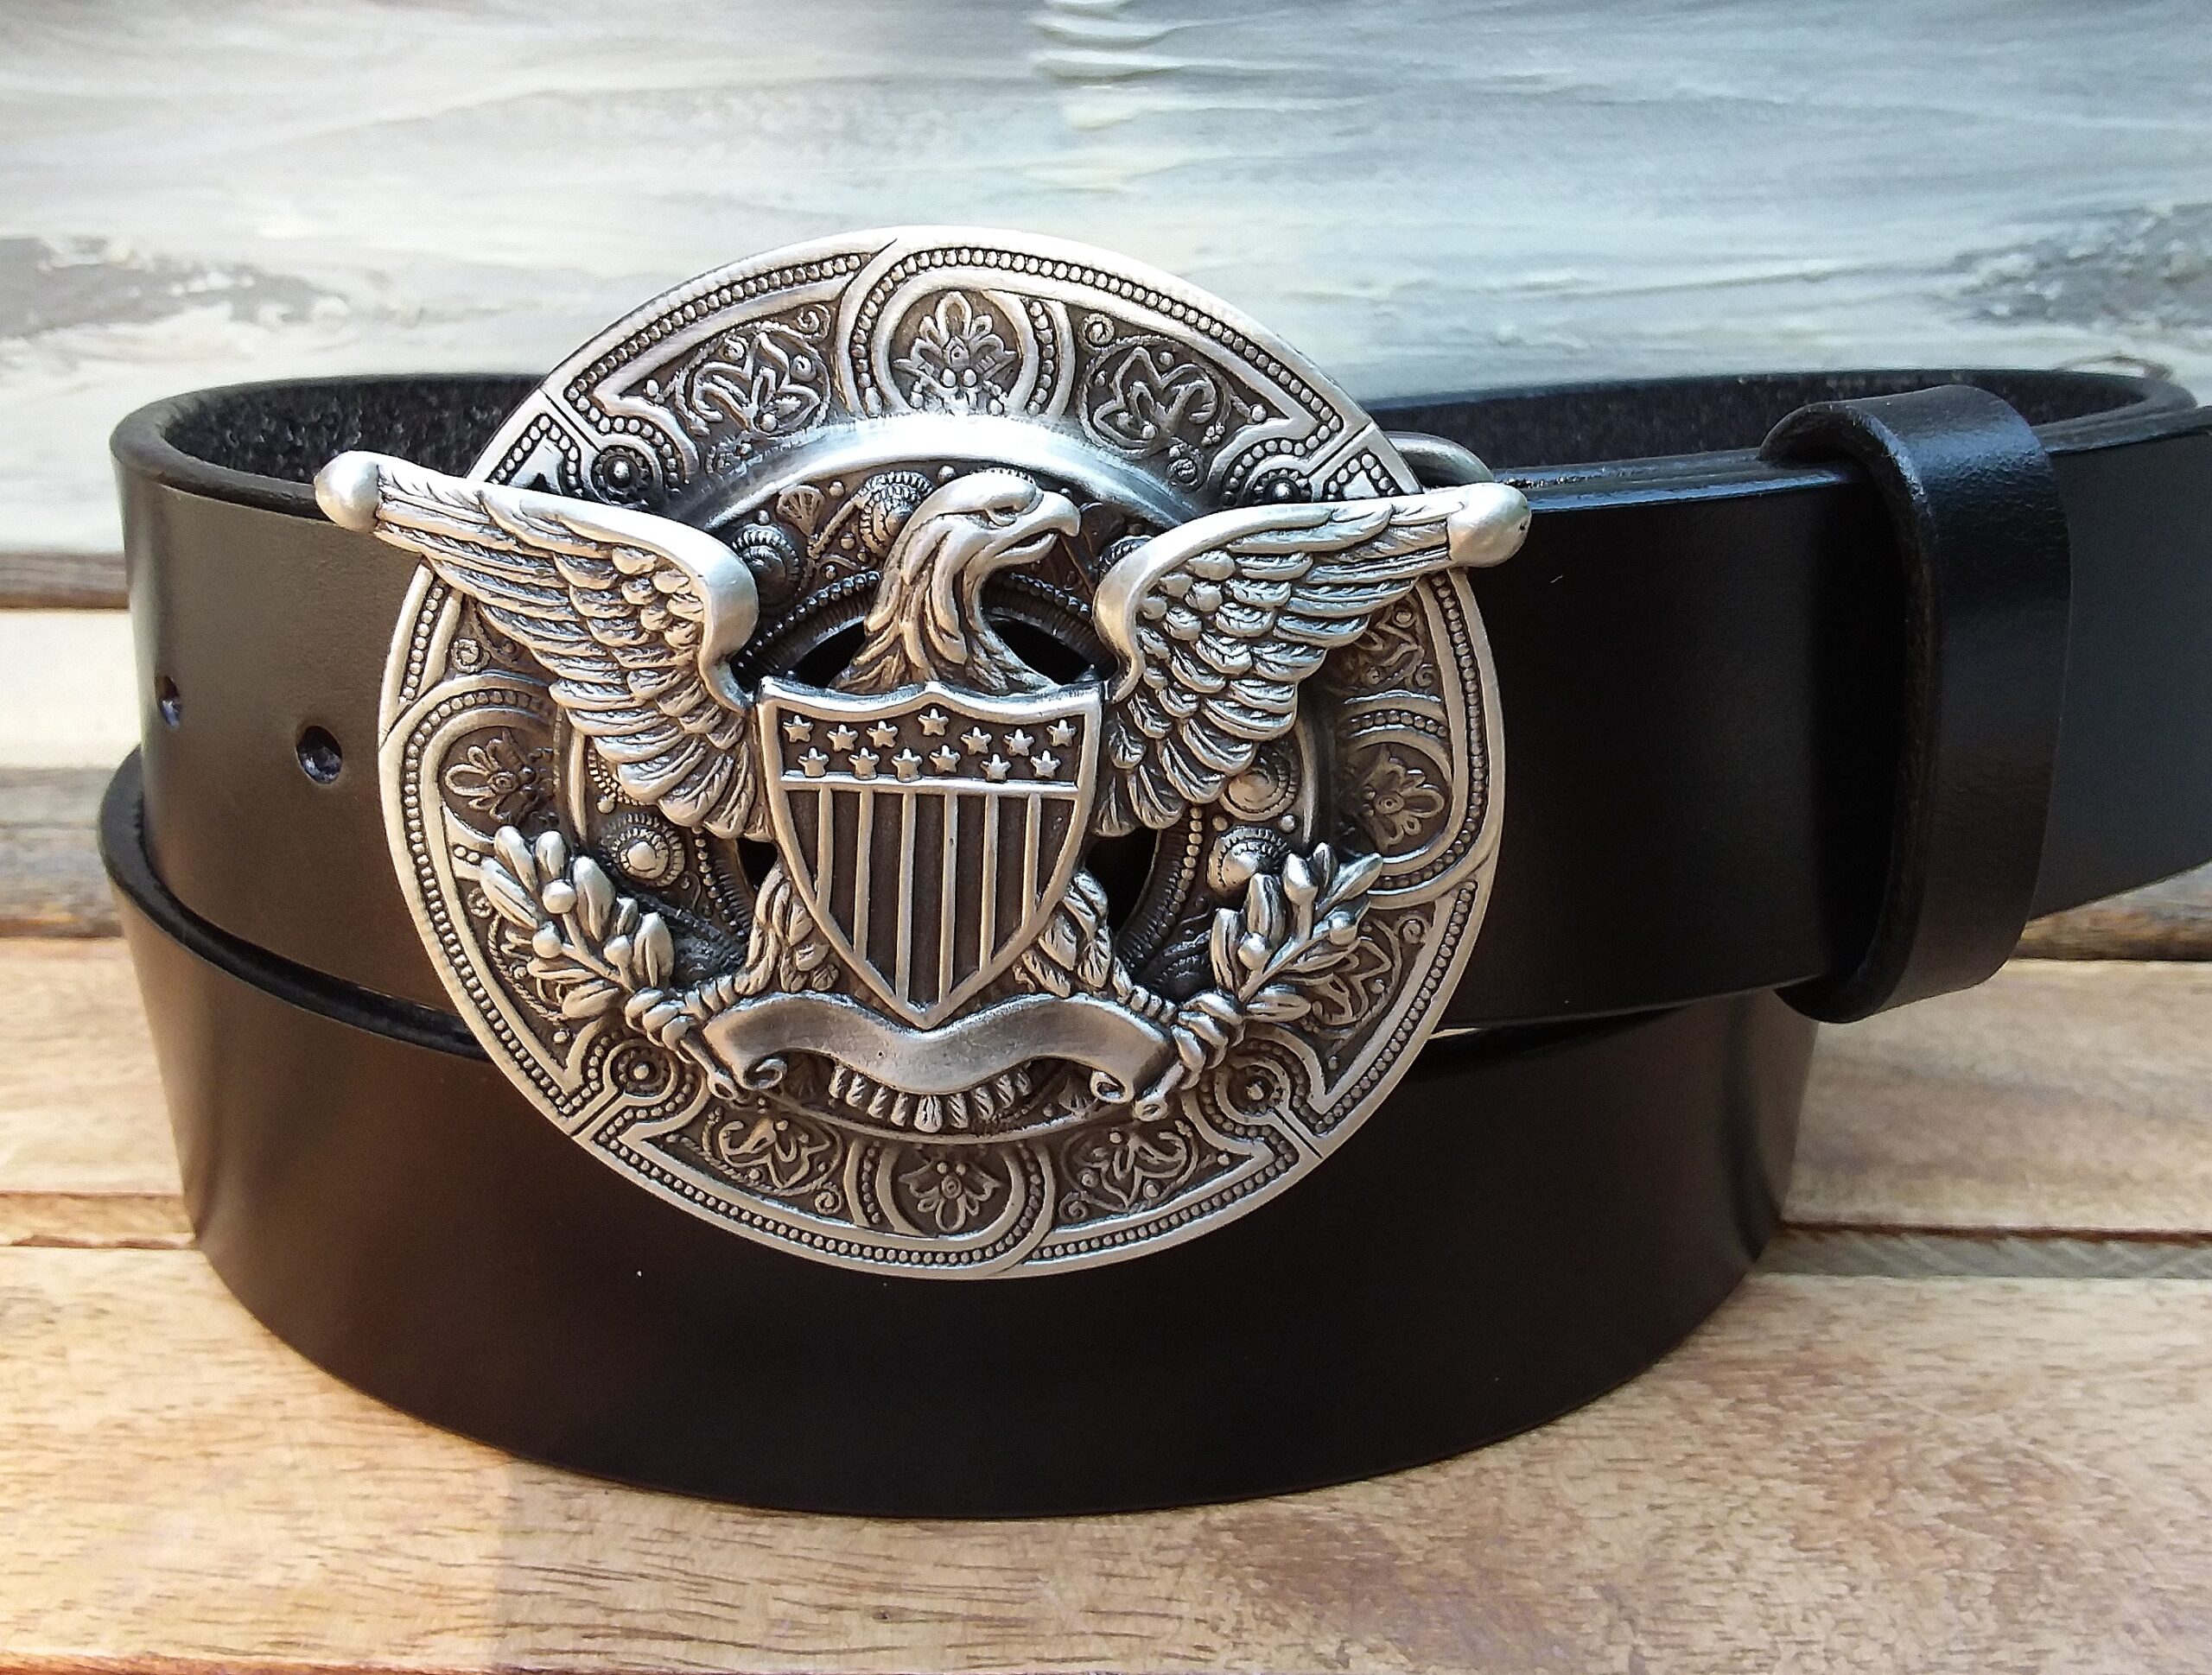 Vintage Eagle Belt Buckle, Brass American Eagle, Belt Buckle